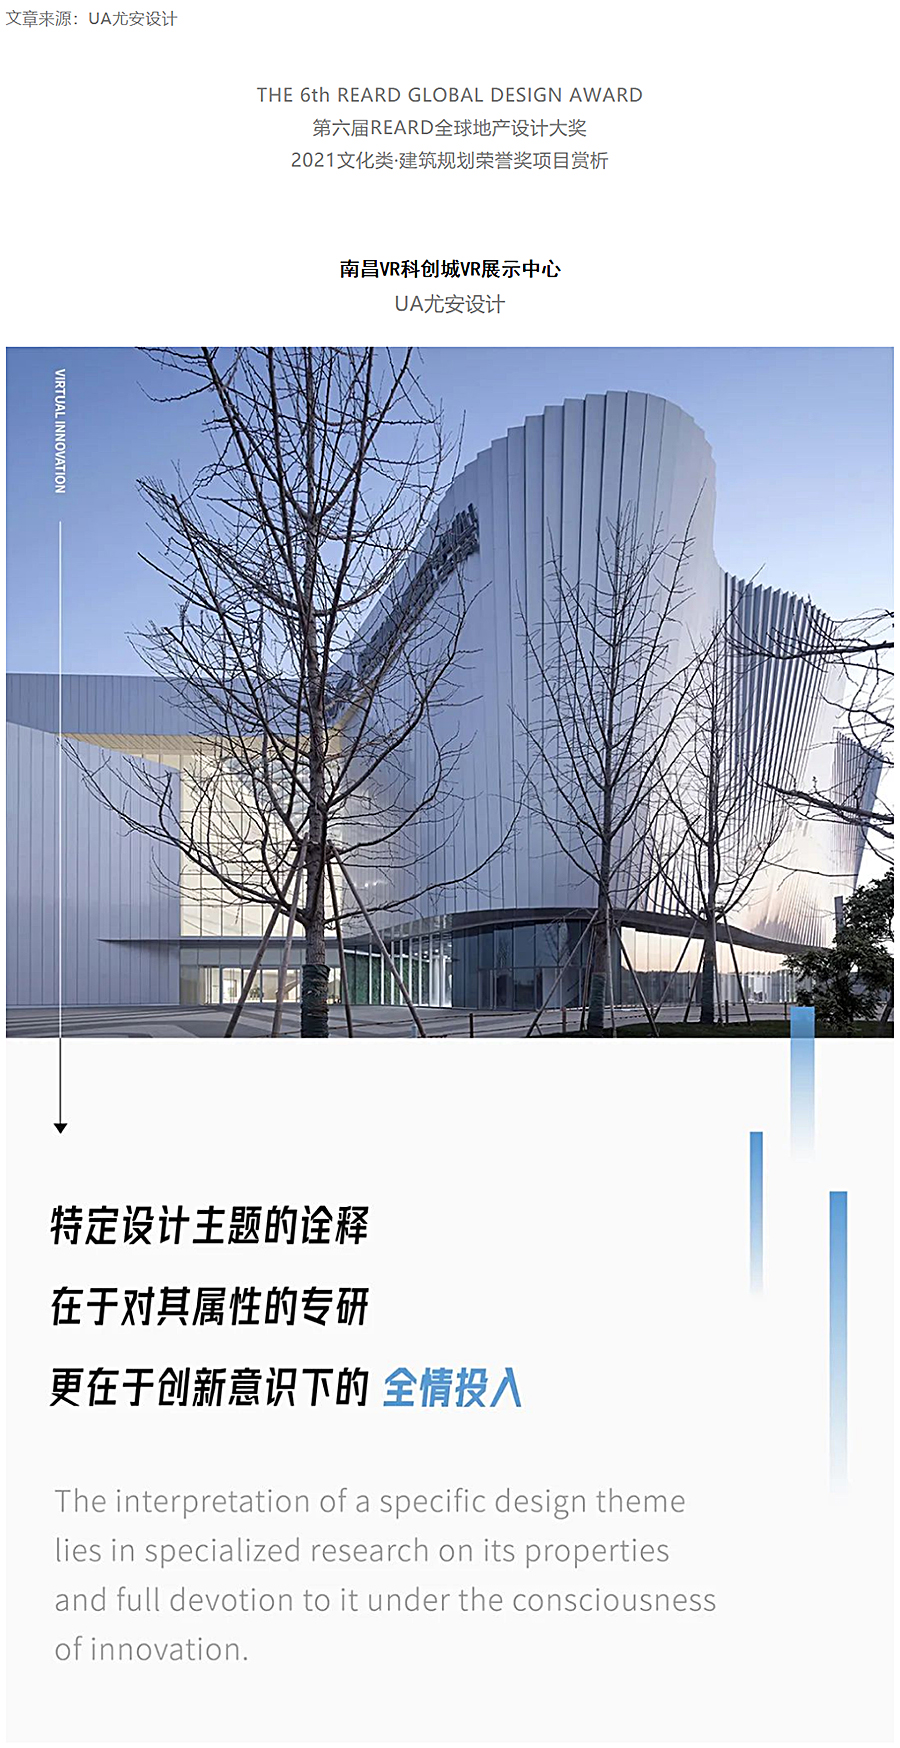 虚拟之筑的有机新生-_-南昌VR科创城VR展示中心_0000_图层-1.jpg